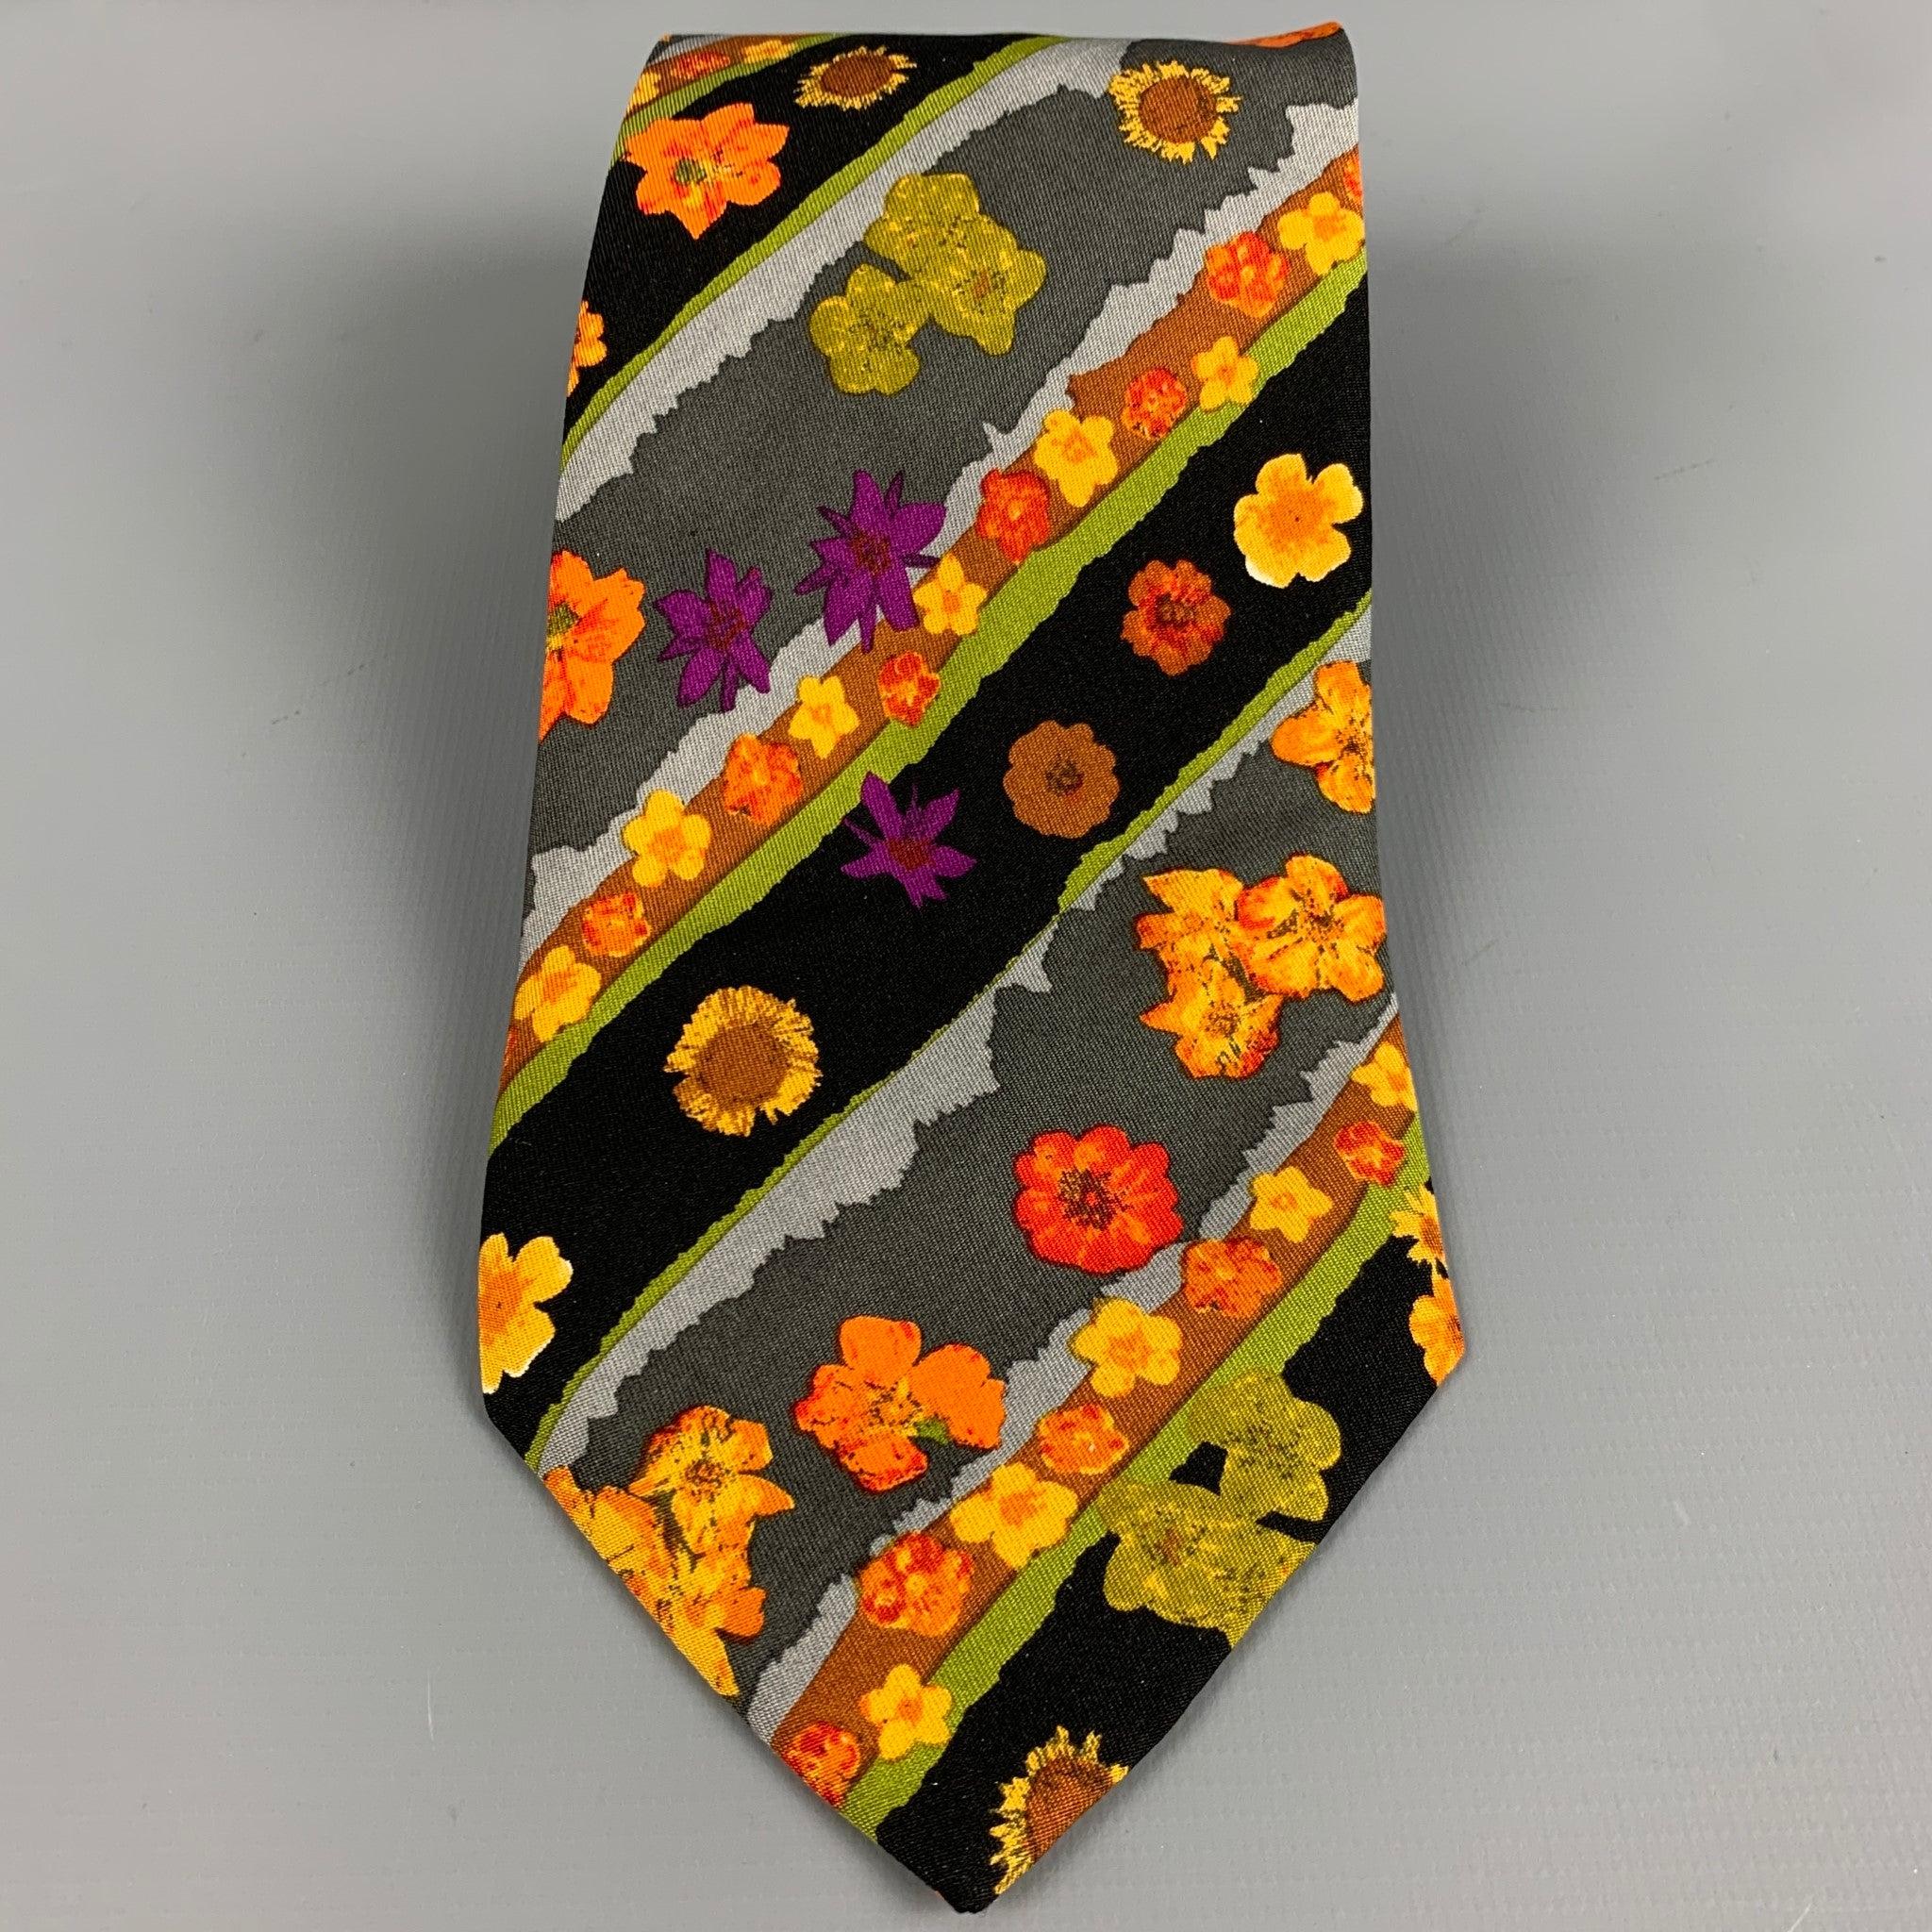 YVES SAINT LAURENT
Krawatte aus einem mehrfarbigen Seidenstoff mit lebhaftem Aquarell-Blumenprint. Made in Italy. sehr guter gebrauchter Zustand. Geringfügige Mängel. 

Abmessungen: 
  Breite: 3,5 Zoll Länge: 59 Zoll 
  
  
 
Referenz: